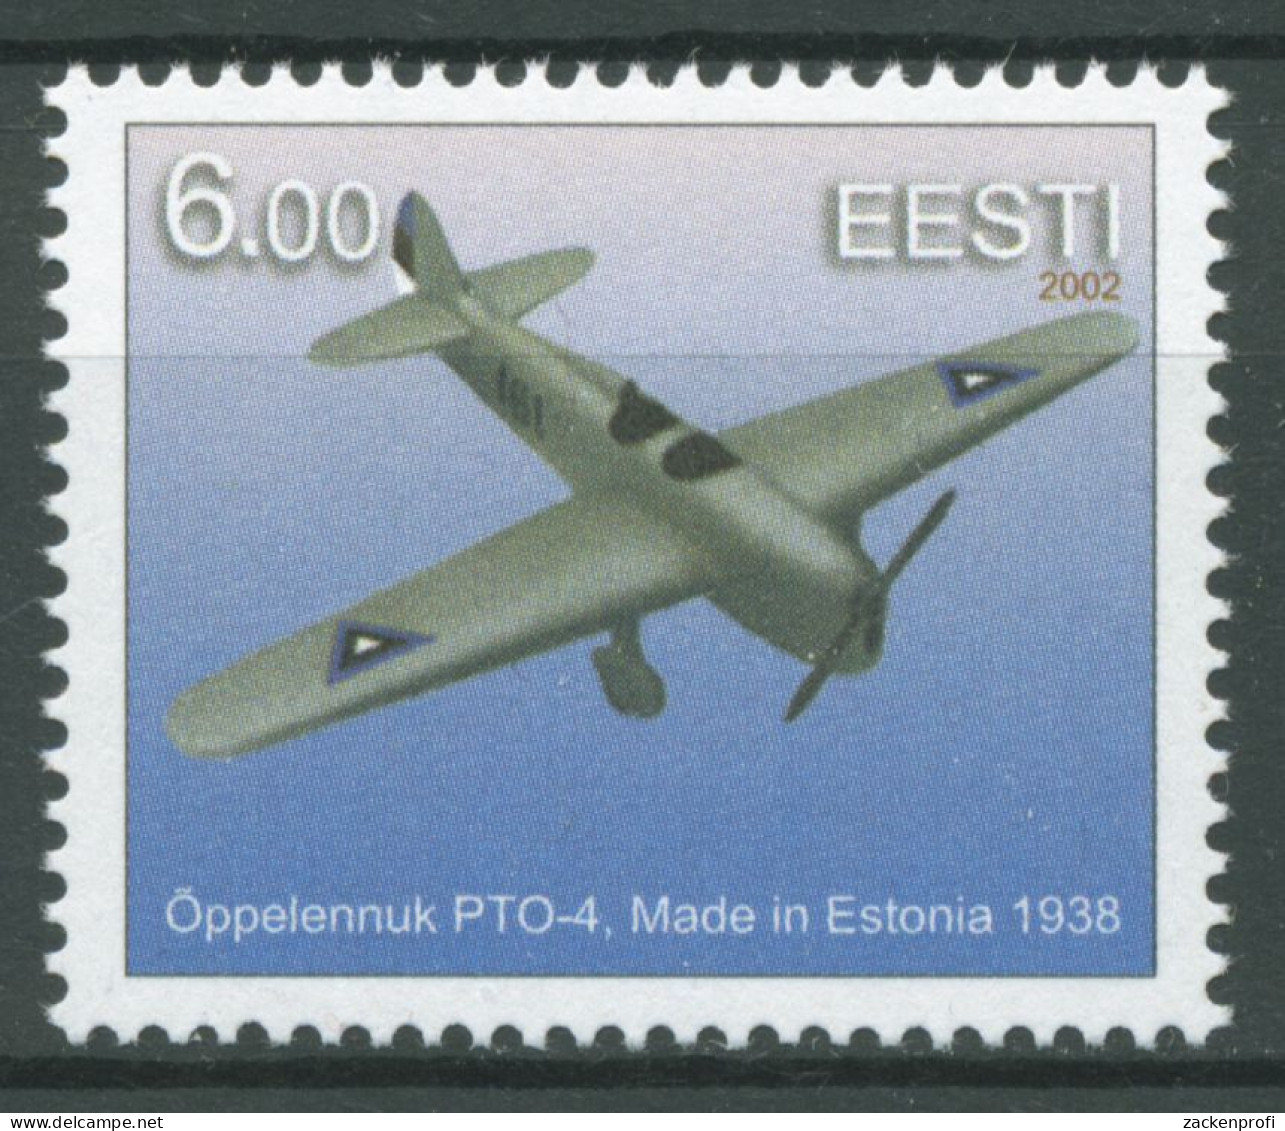 Estland 2002 Luftfahrt Schulflugzeug 433 Postfrisch - Estonia